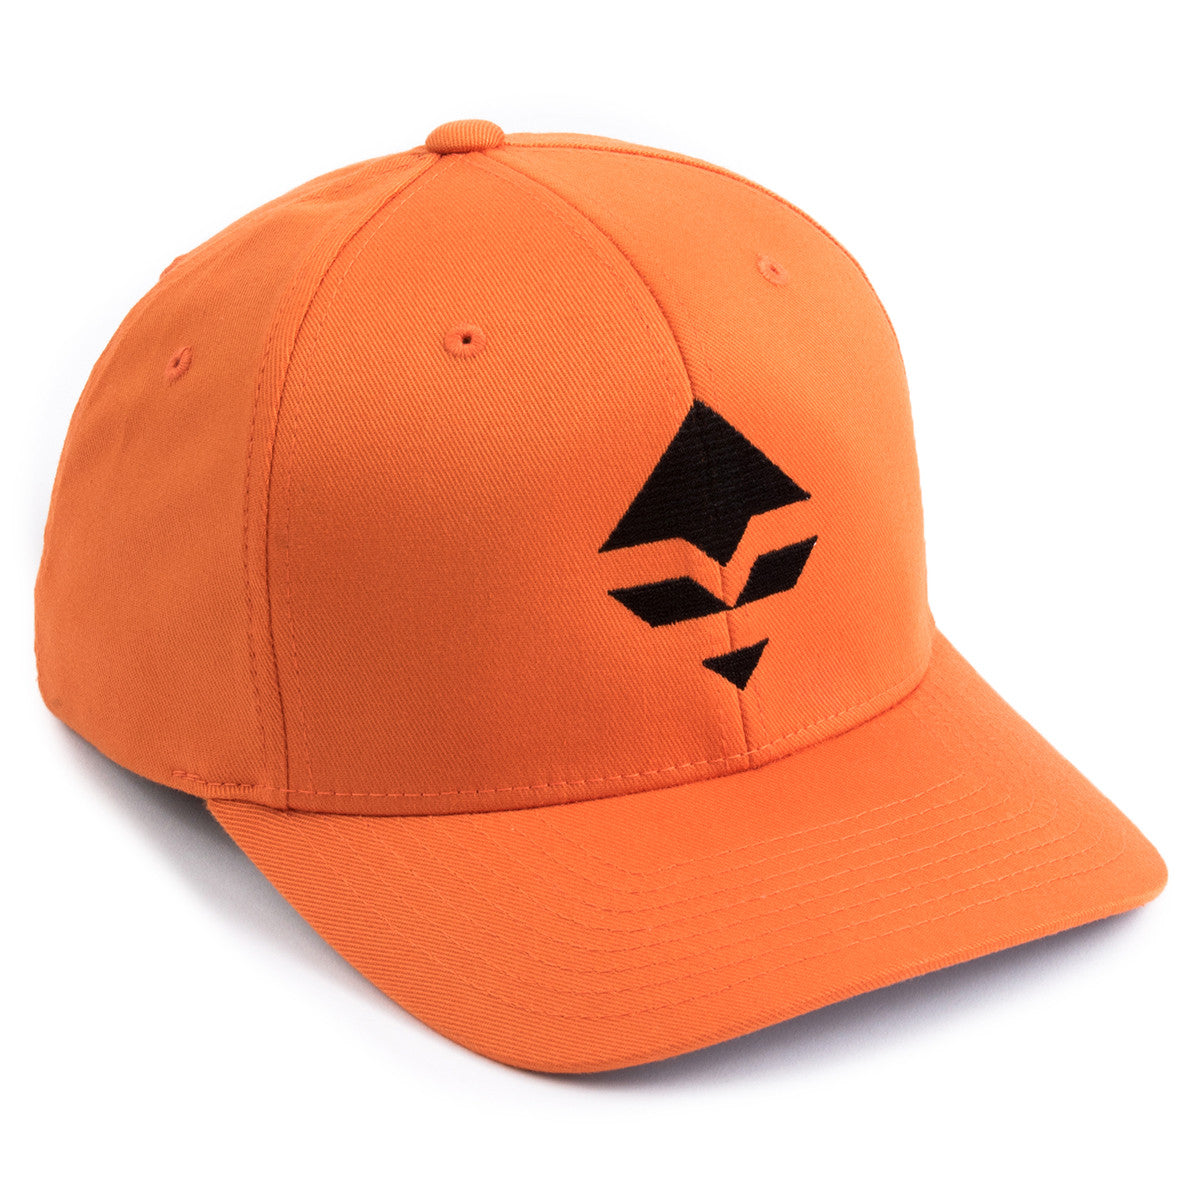 GOHUNT Orange Hat in goHUNT Orange Hat - goHUNT Shop by GOHUNT | GOHUNT - GOHUNT Shop